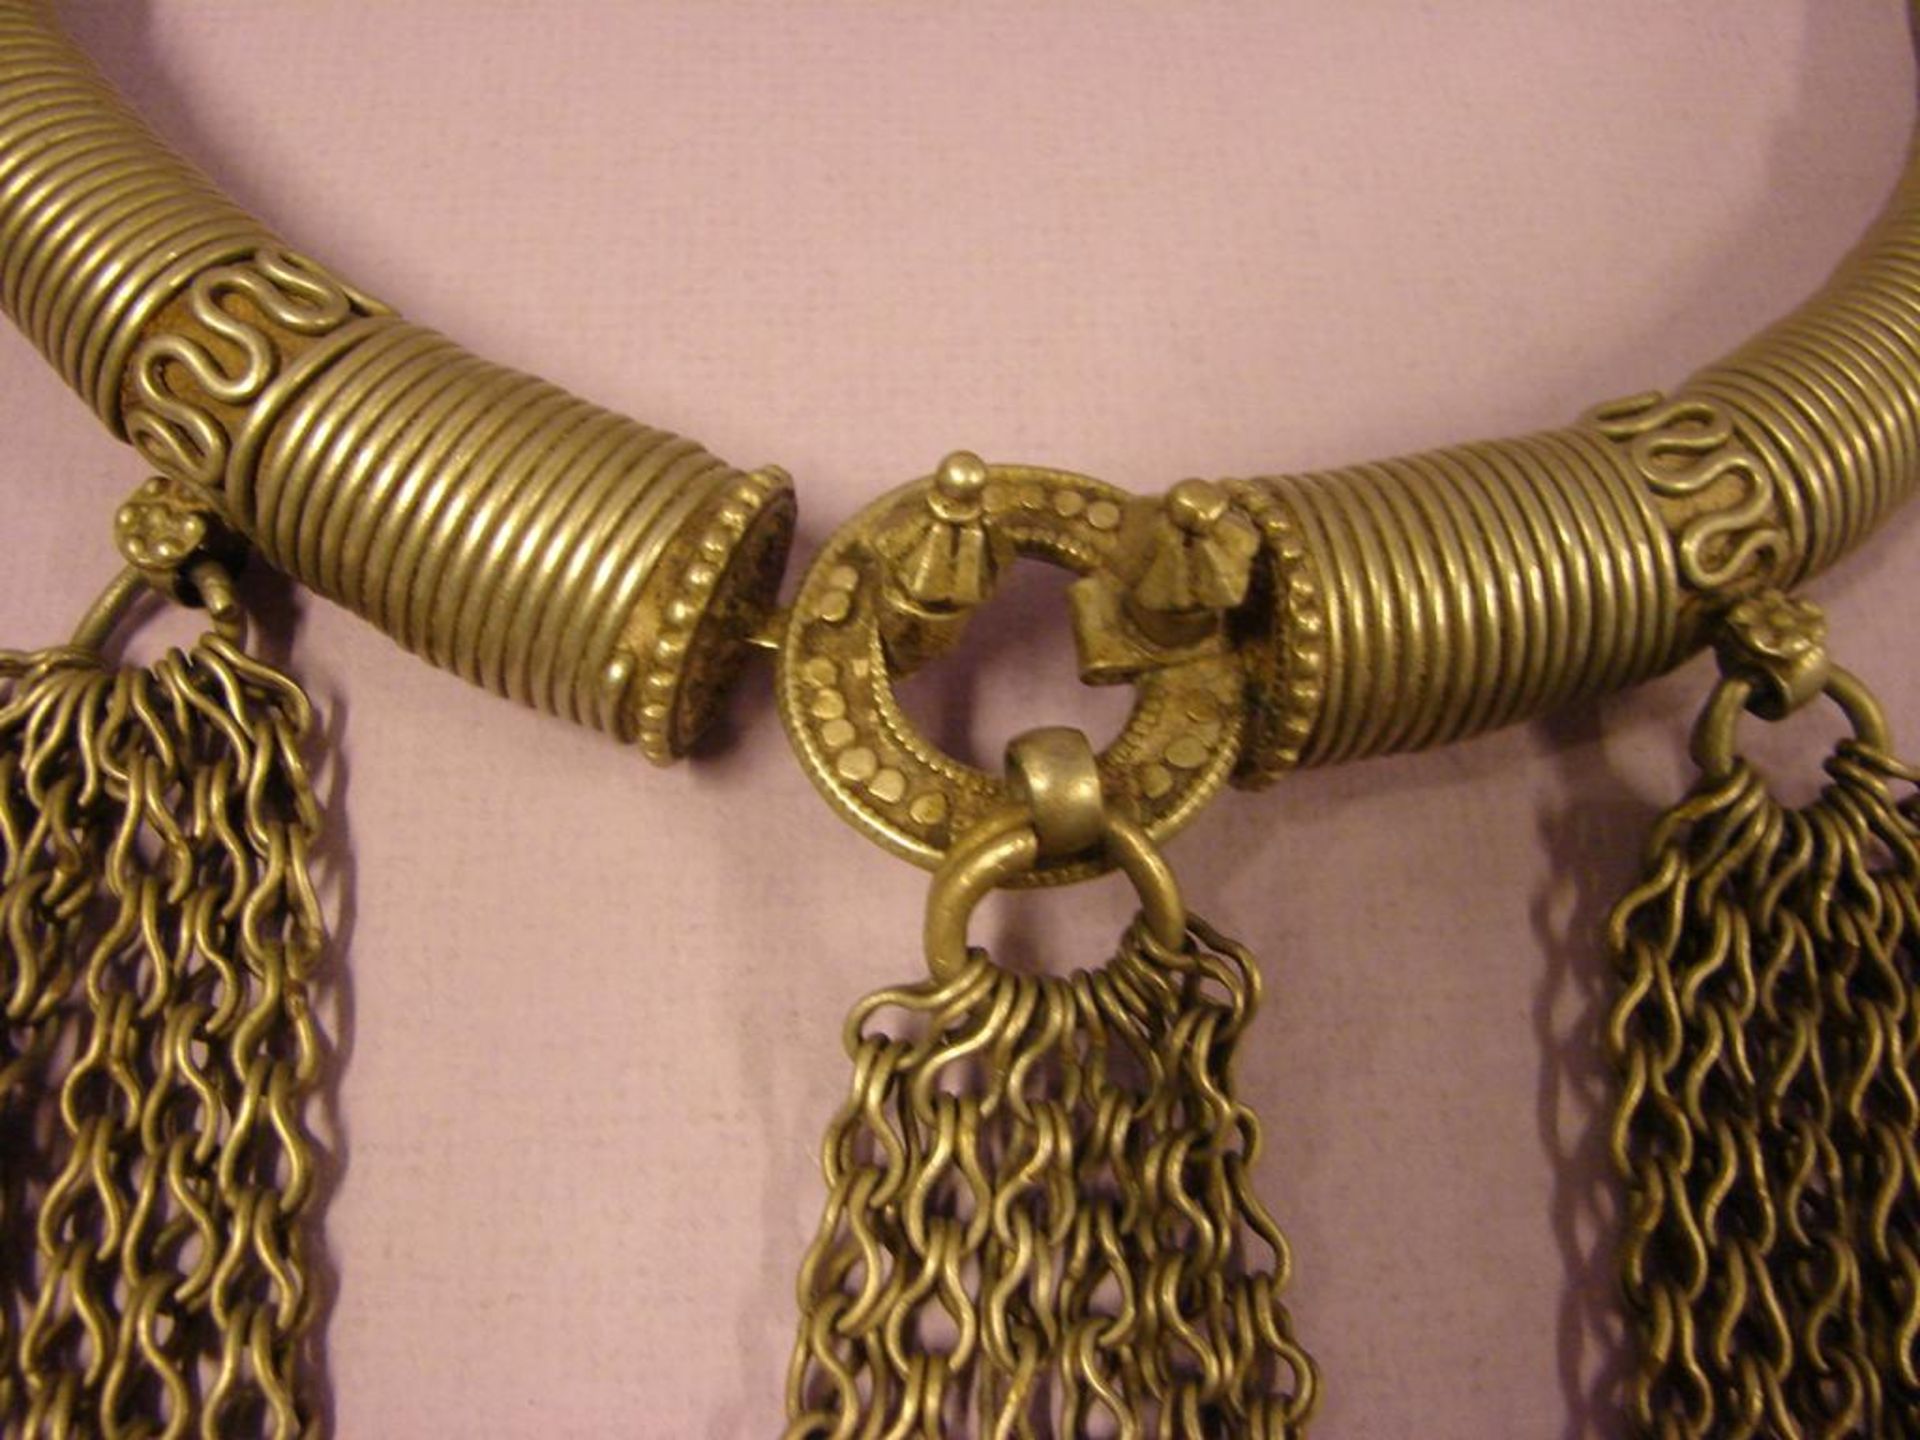 Halskette mit Behang, Silber?, wohl Tibet, Dm. ca. 19 cm - Bild 2 aus 2